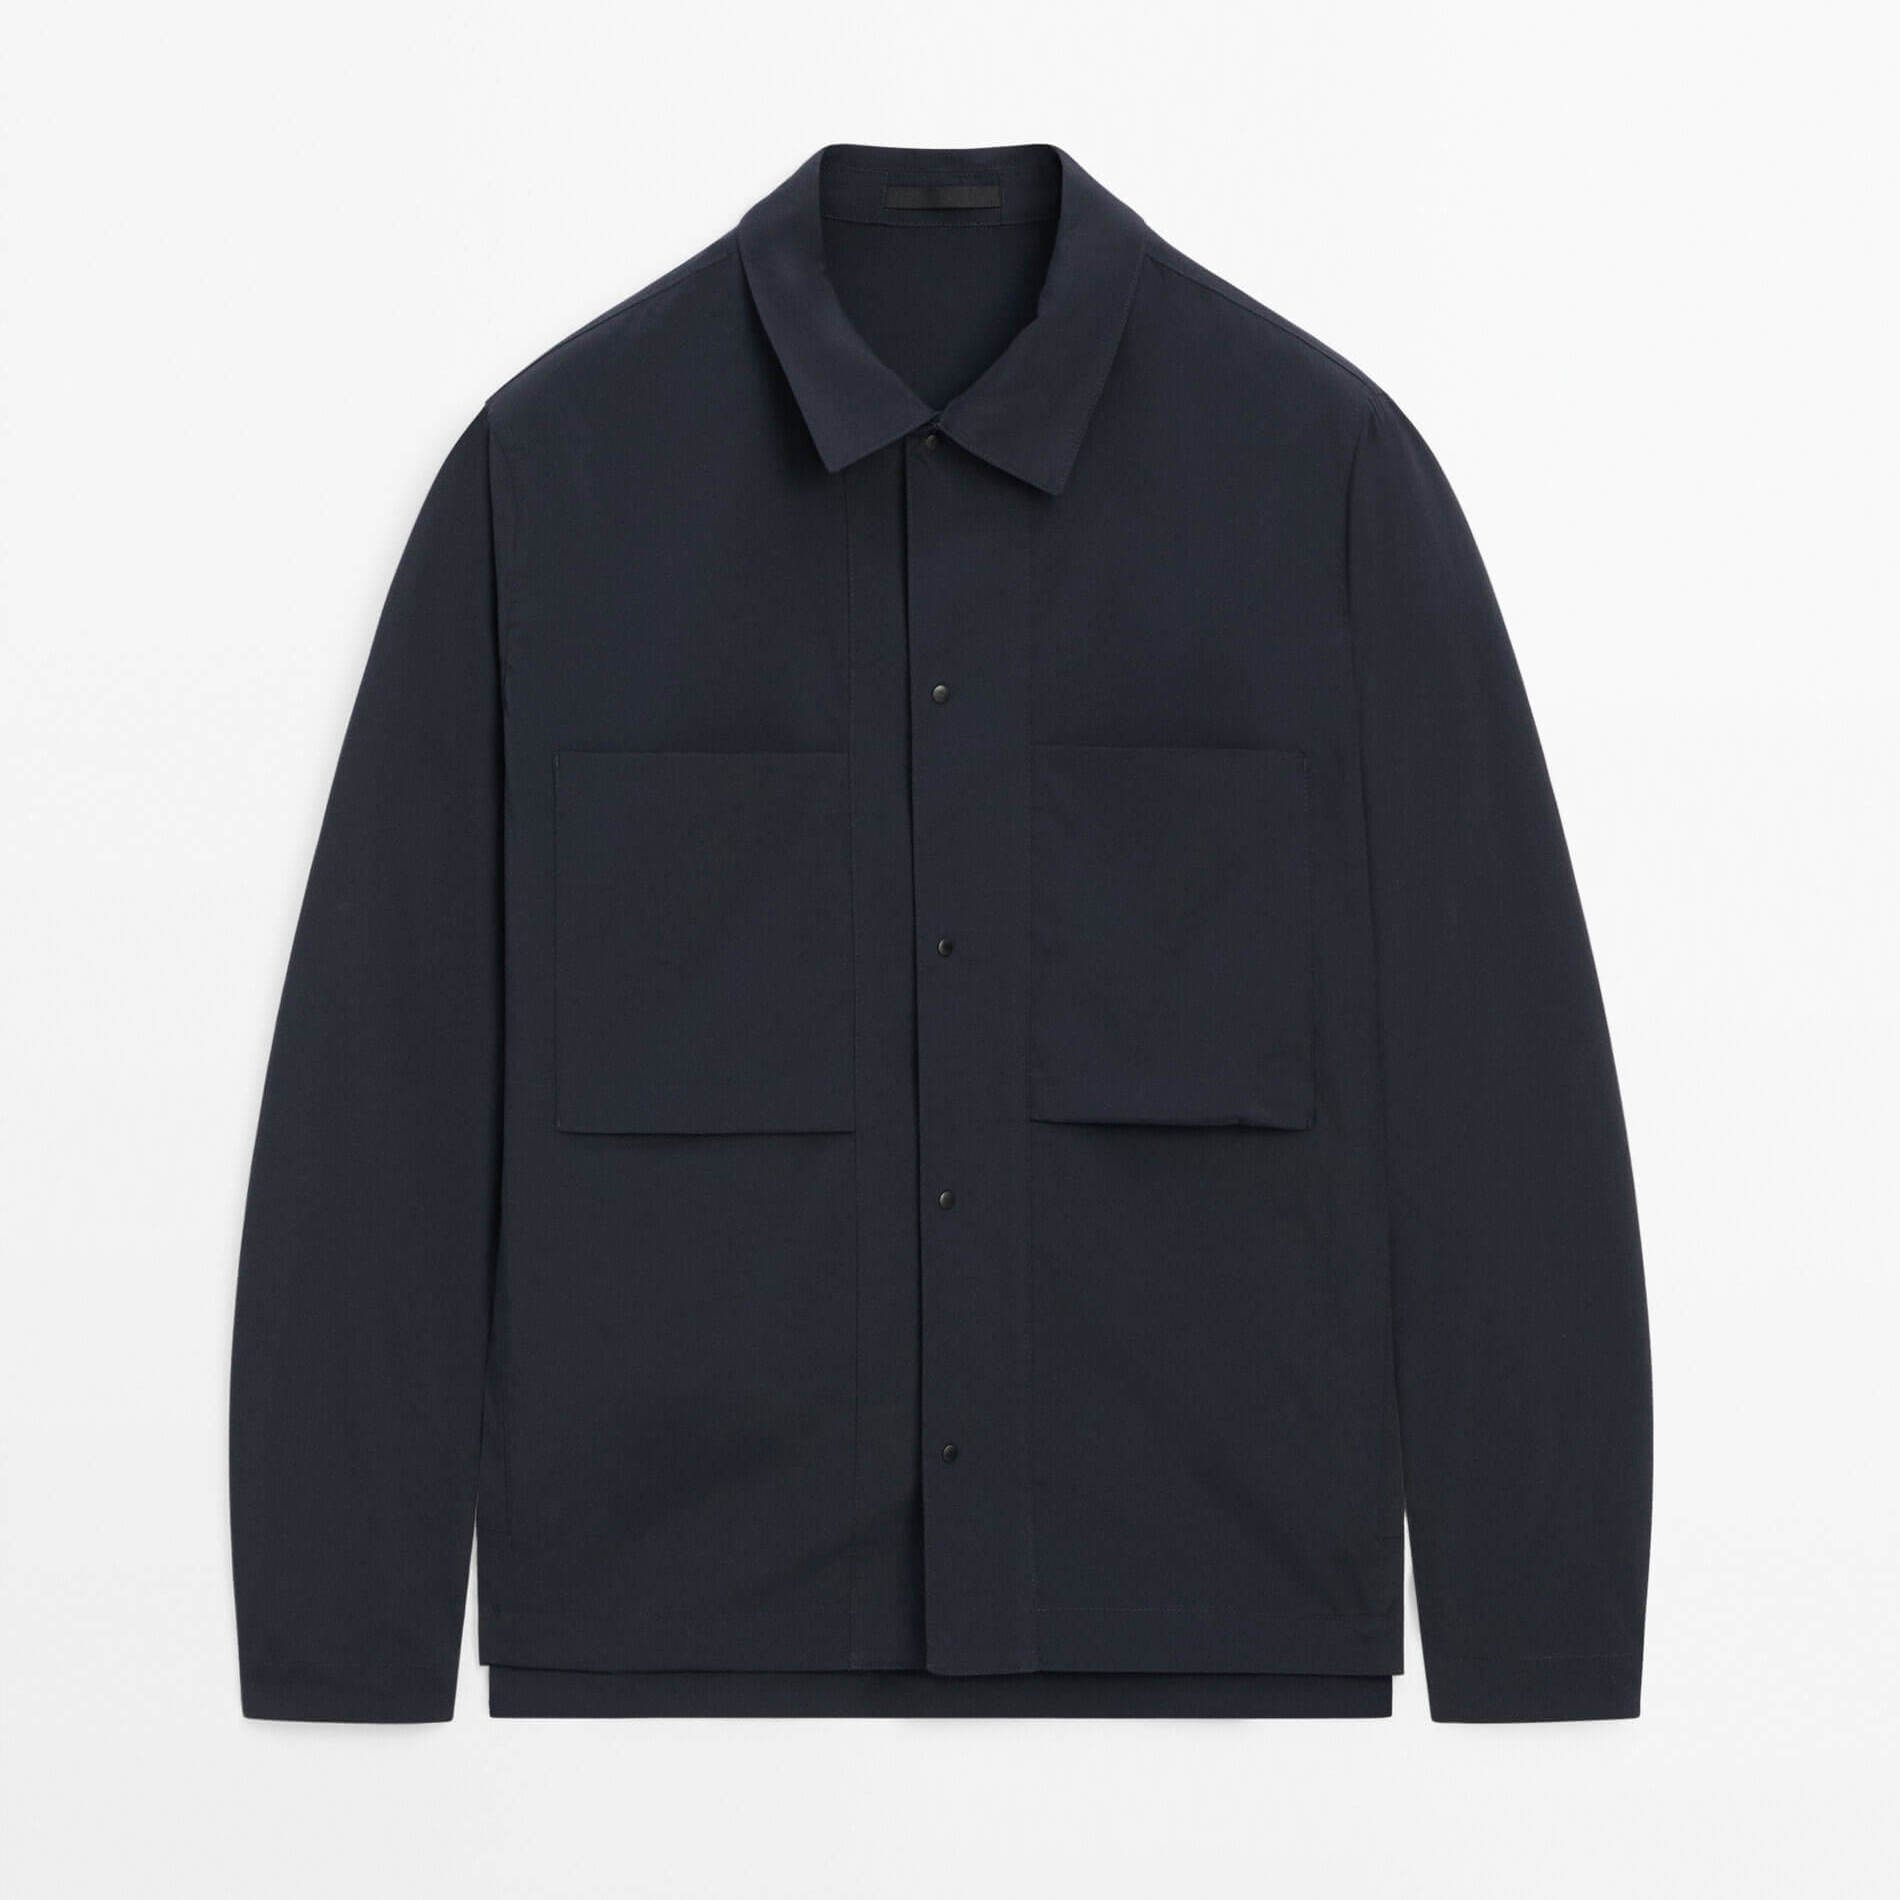 Куртка-рубашка Massimo Dutti With Chest Pockets Studio, темно-синий куртка massimo dutti double breasted with zip pockets темно синий